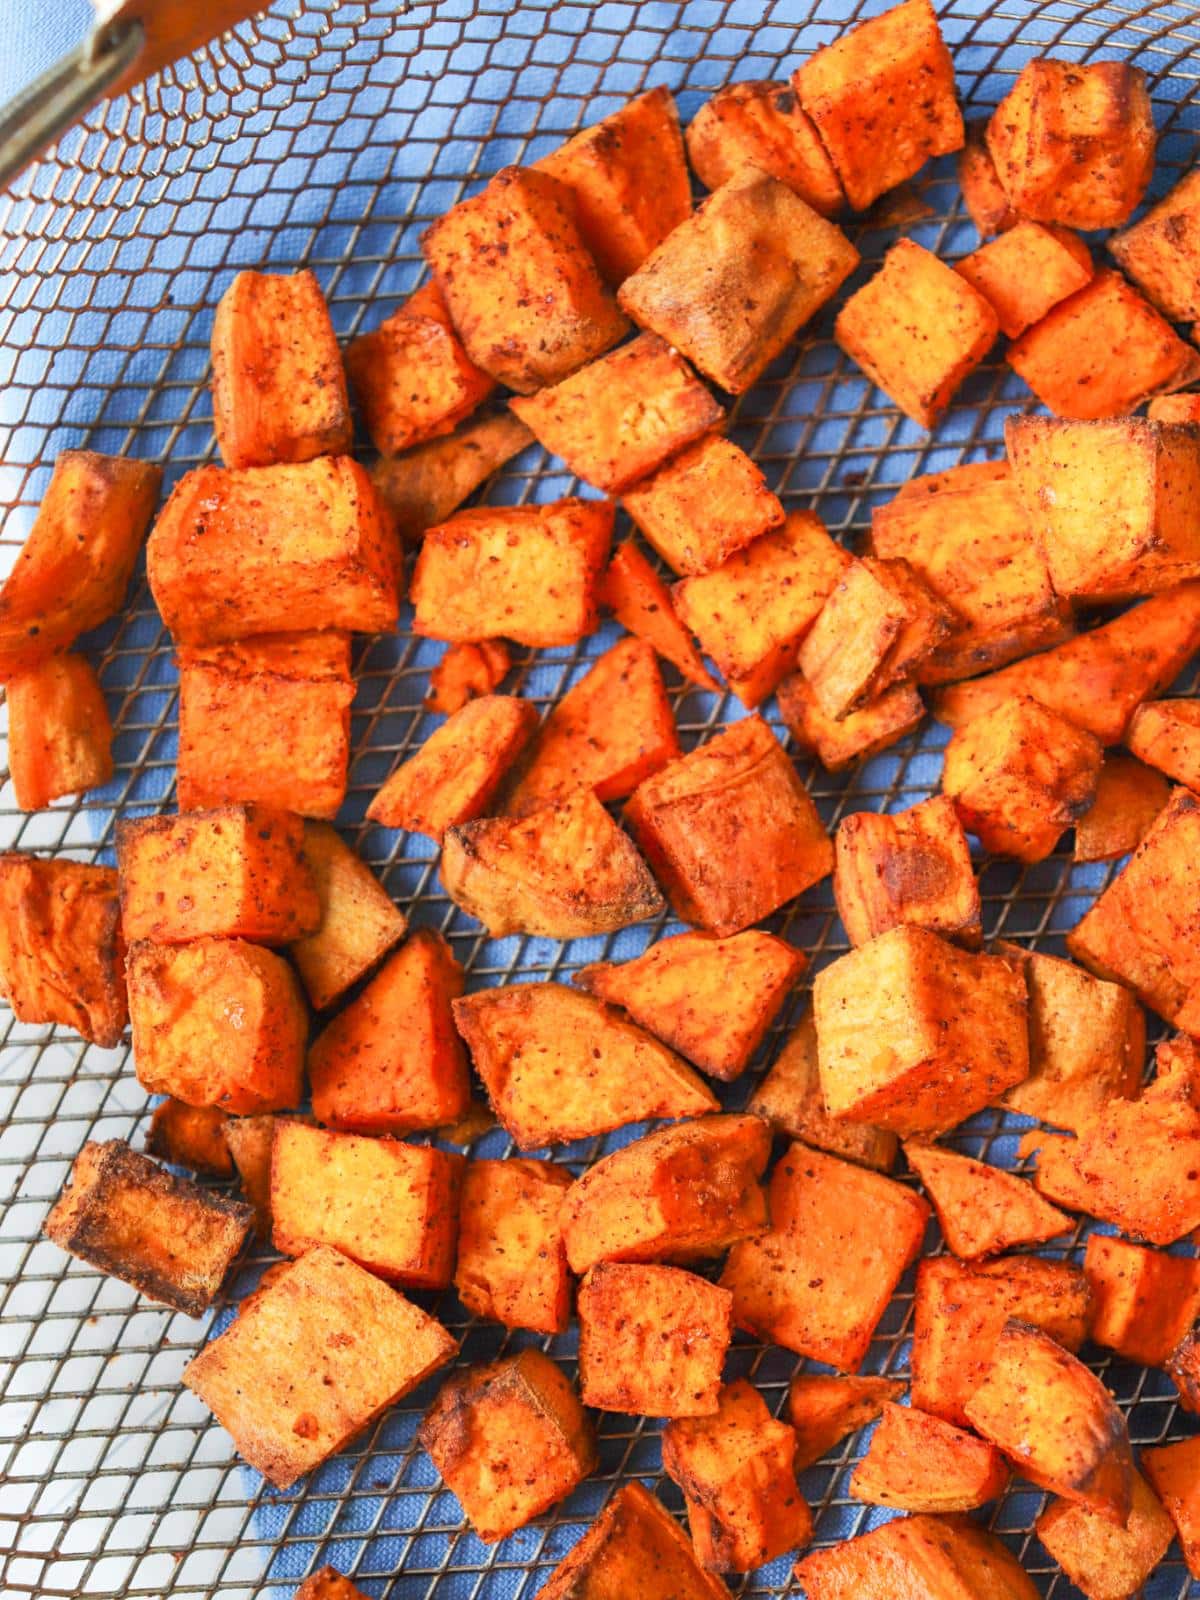 Seasoned sweet potato cubes in an air fryer basket.